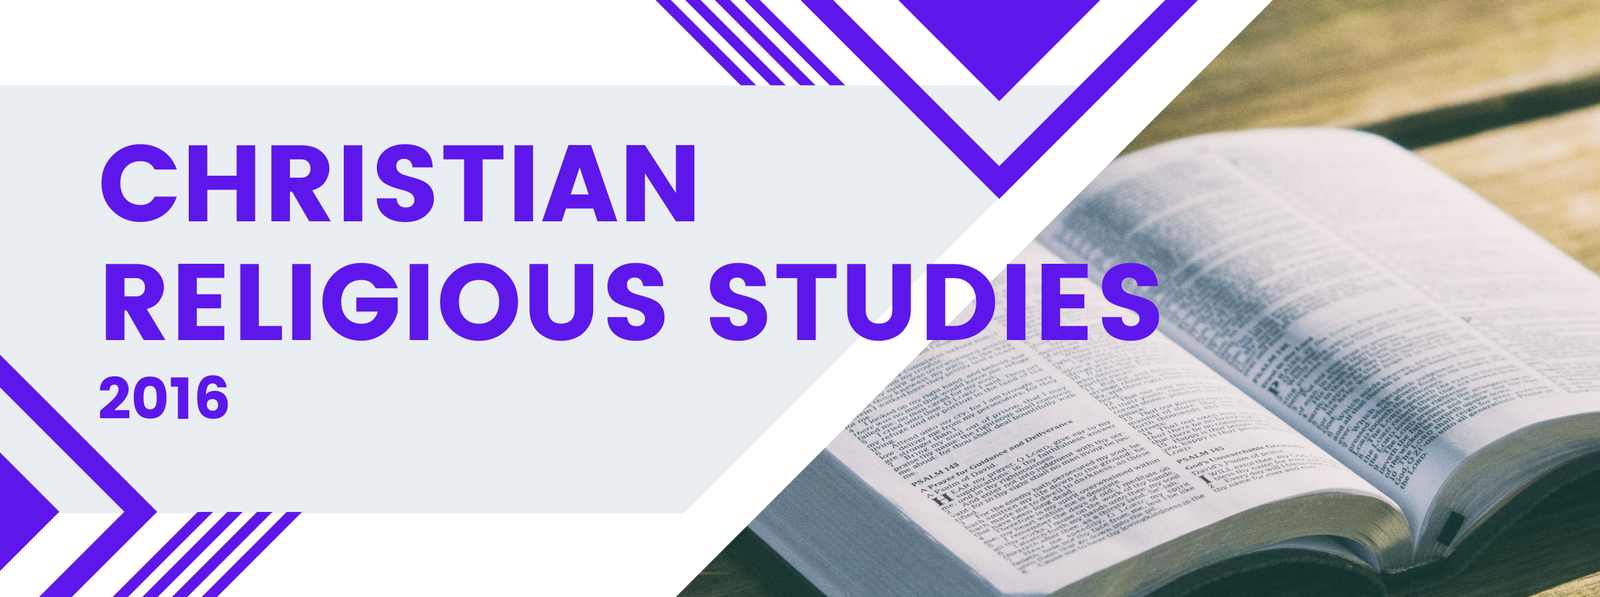 Christian Religious Studies - 2016